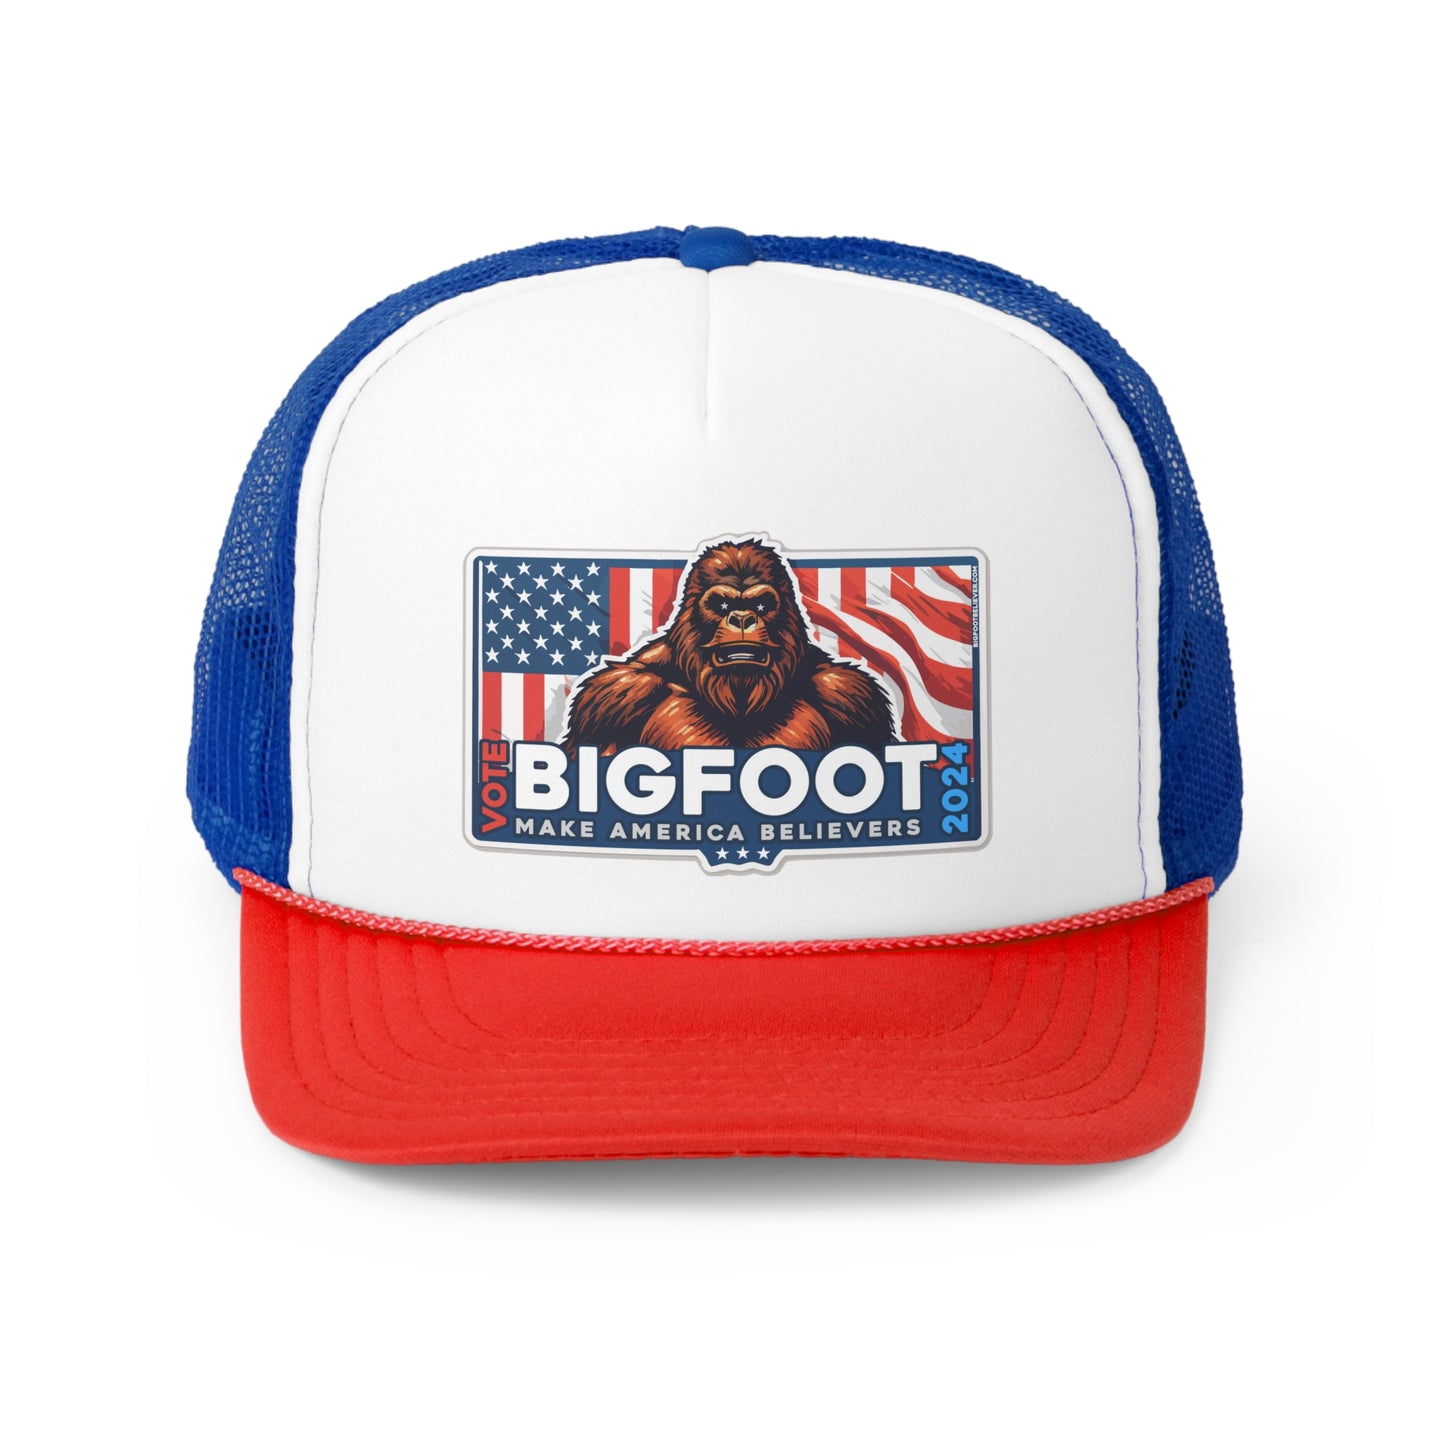 Bigfoot for President 2024 Trucker Caps